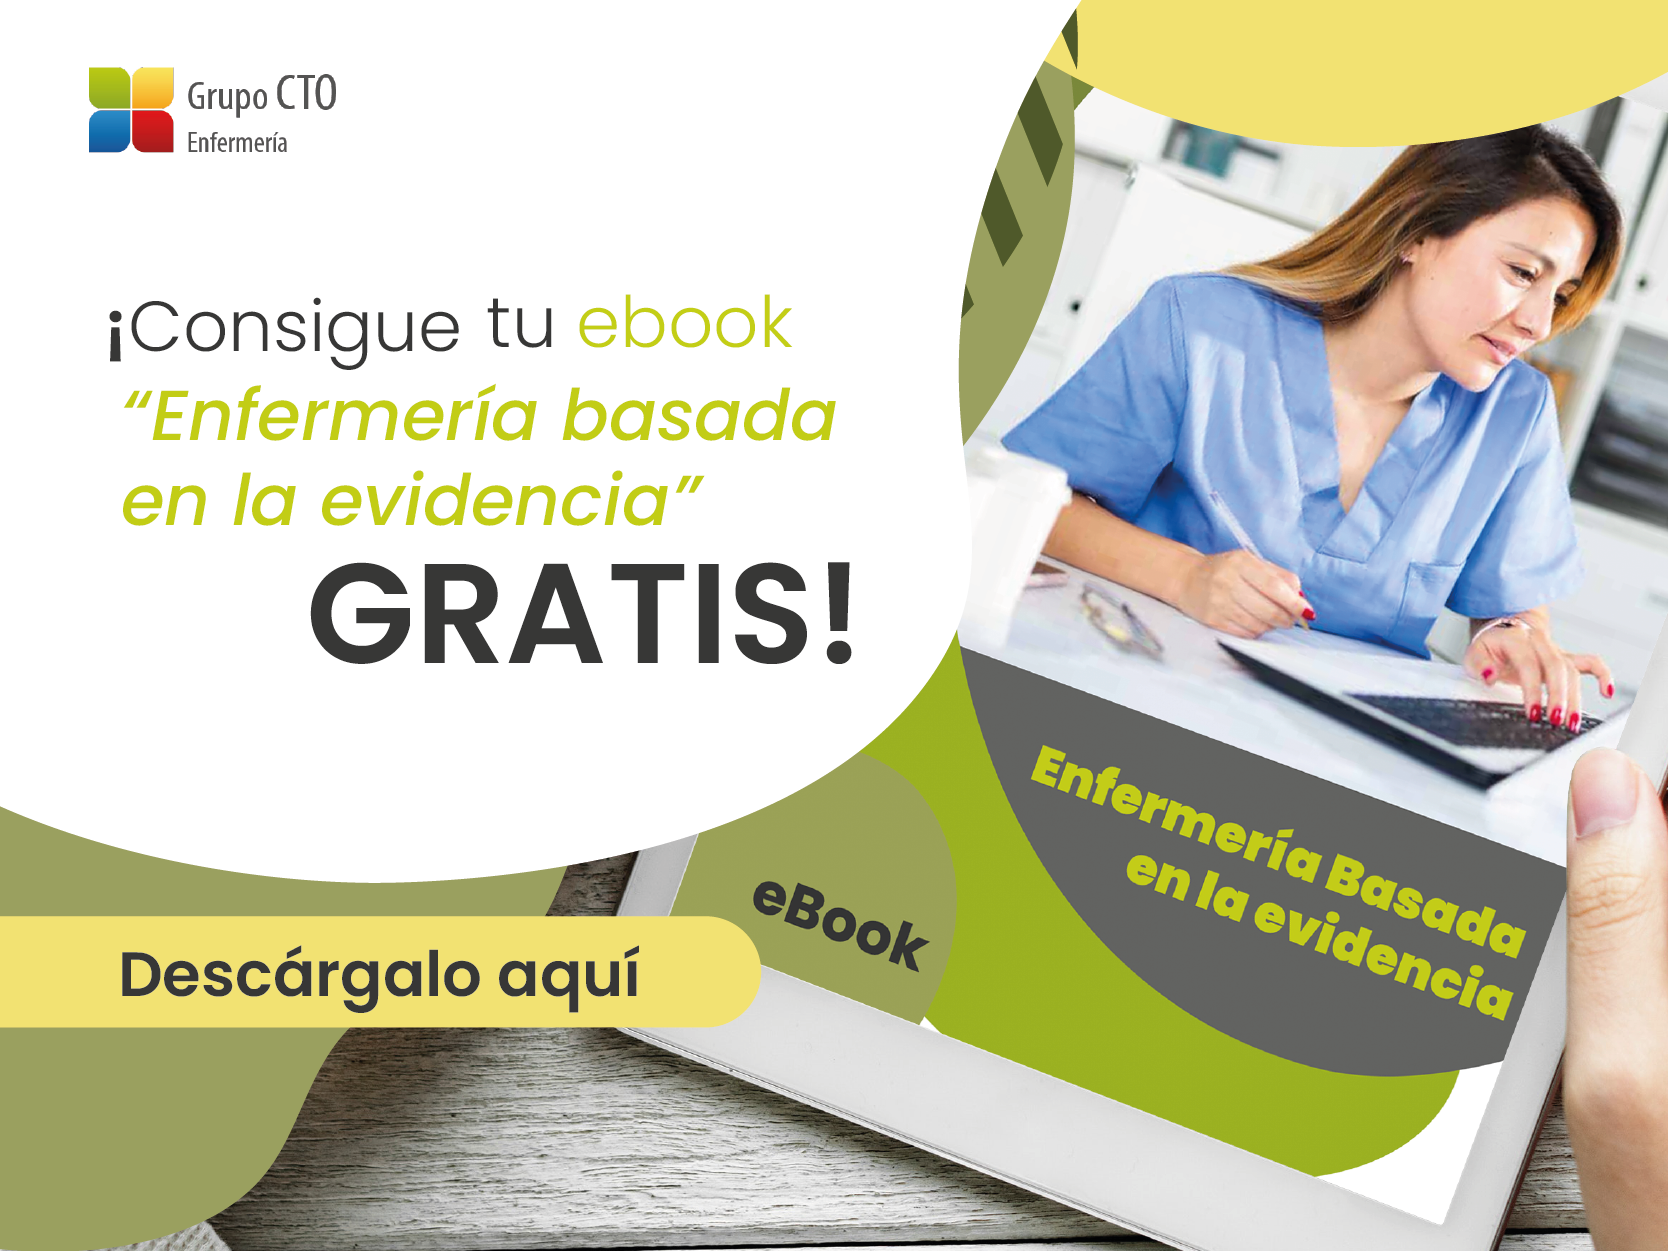 Ebook de Enfermería gratuito